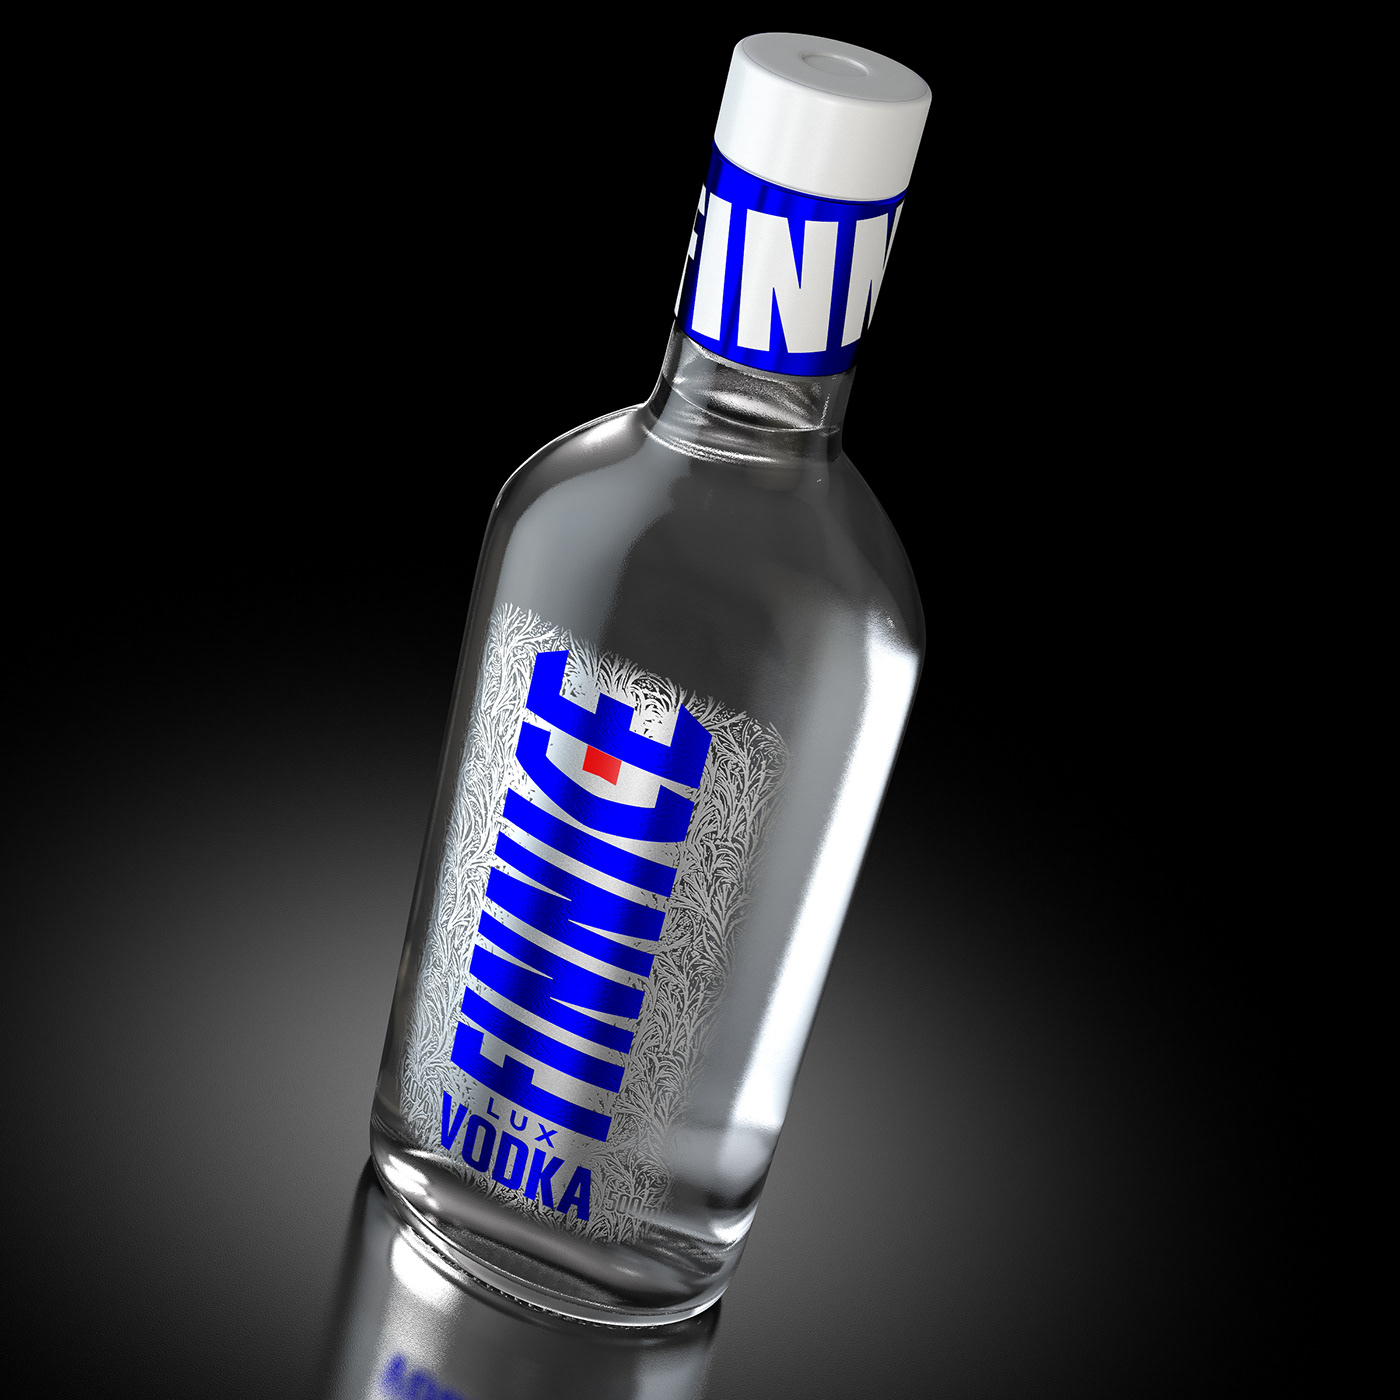 Vodka label design ice alcohol bottle Packaging spirit design